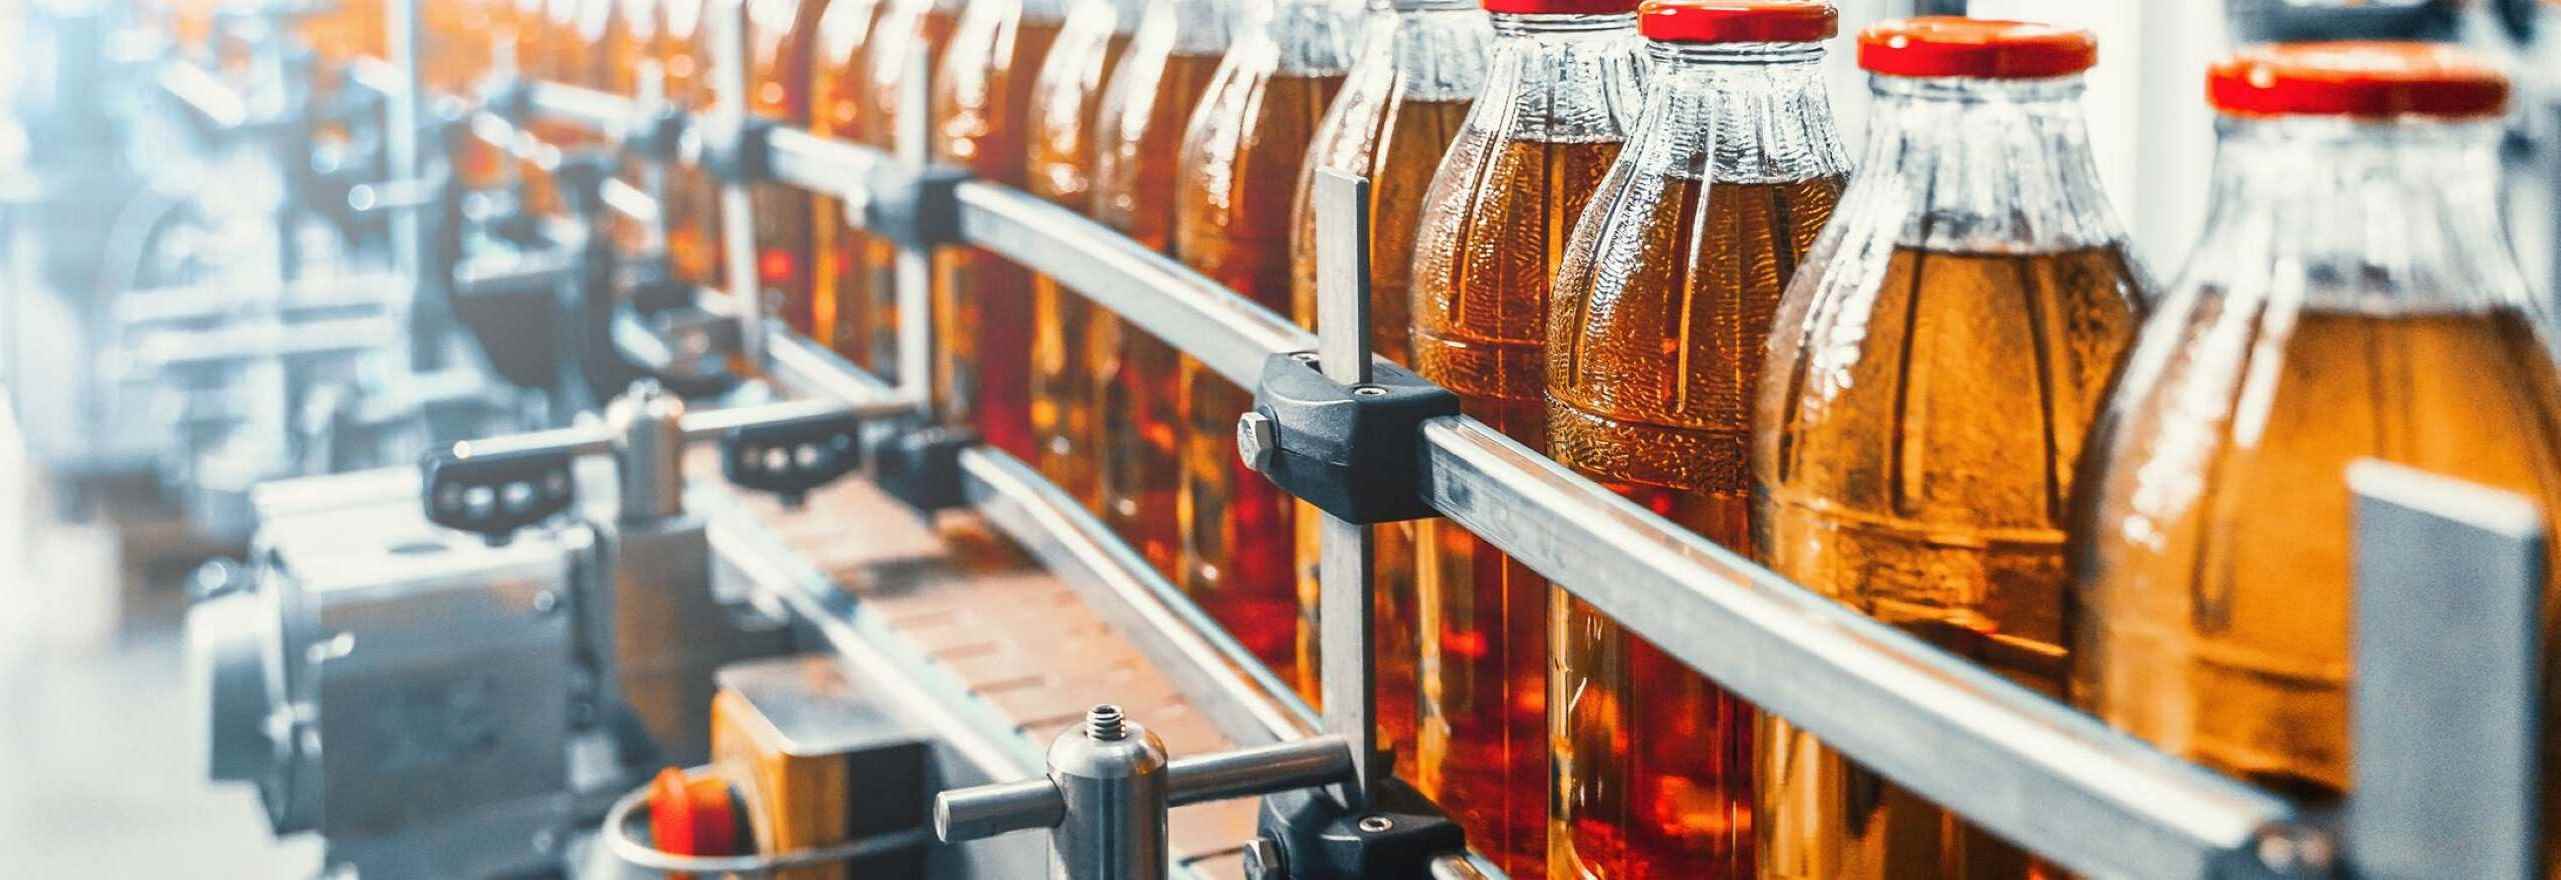 Image of a conveyor belt of drinks bottles filled with an orange drink